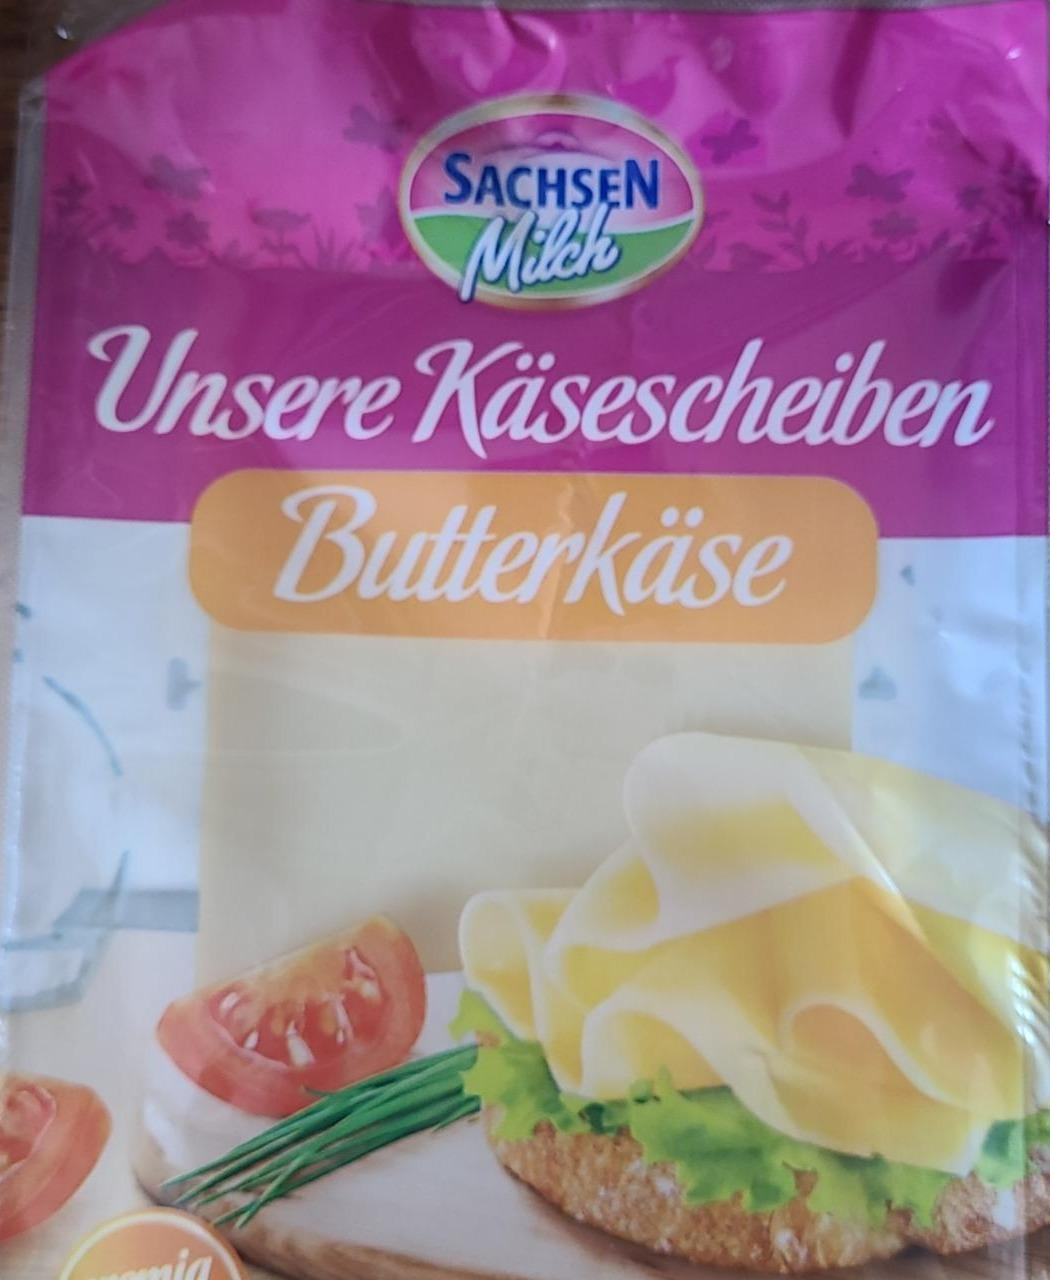 Fotografie - Unsere käsescheiben butterkäse Sachsen Milch